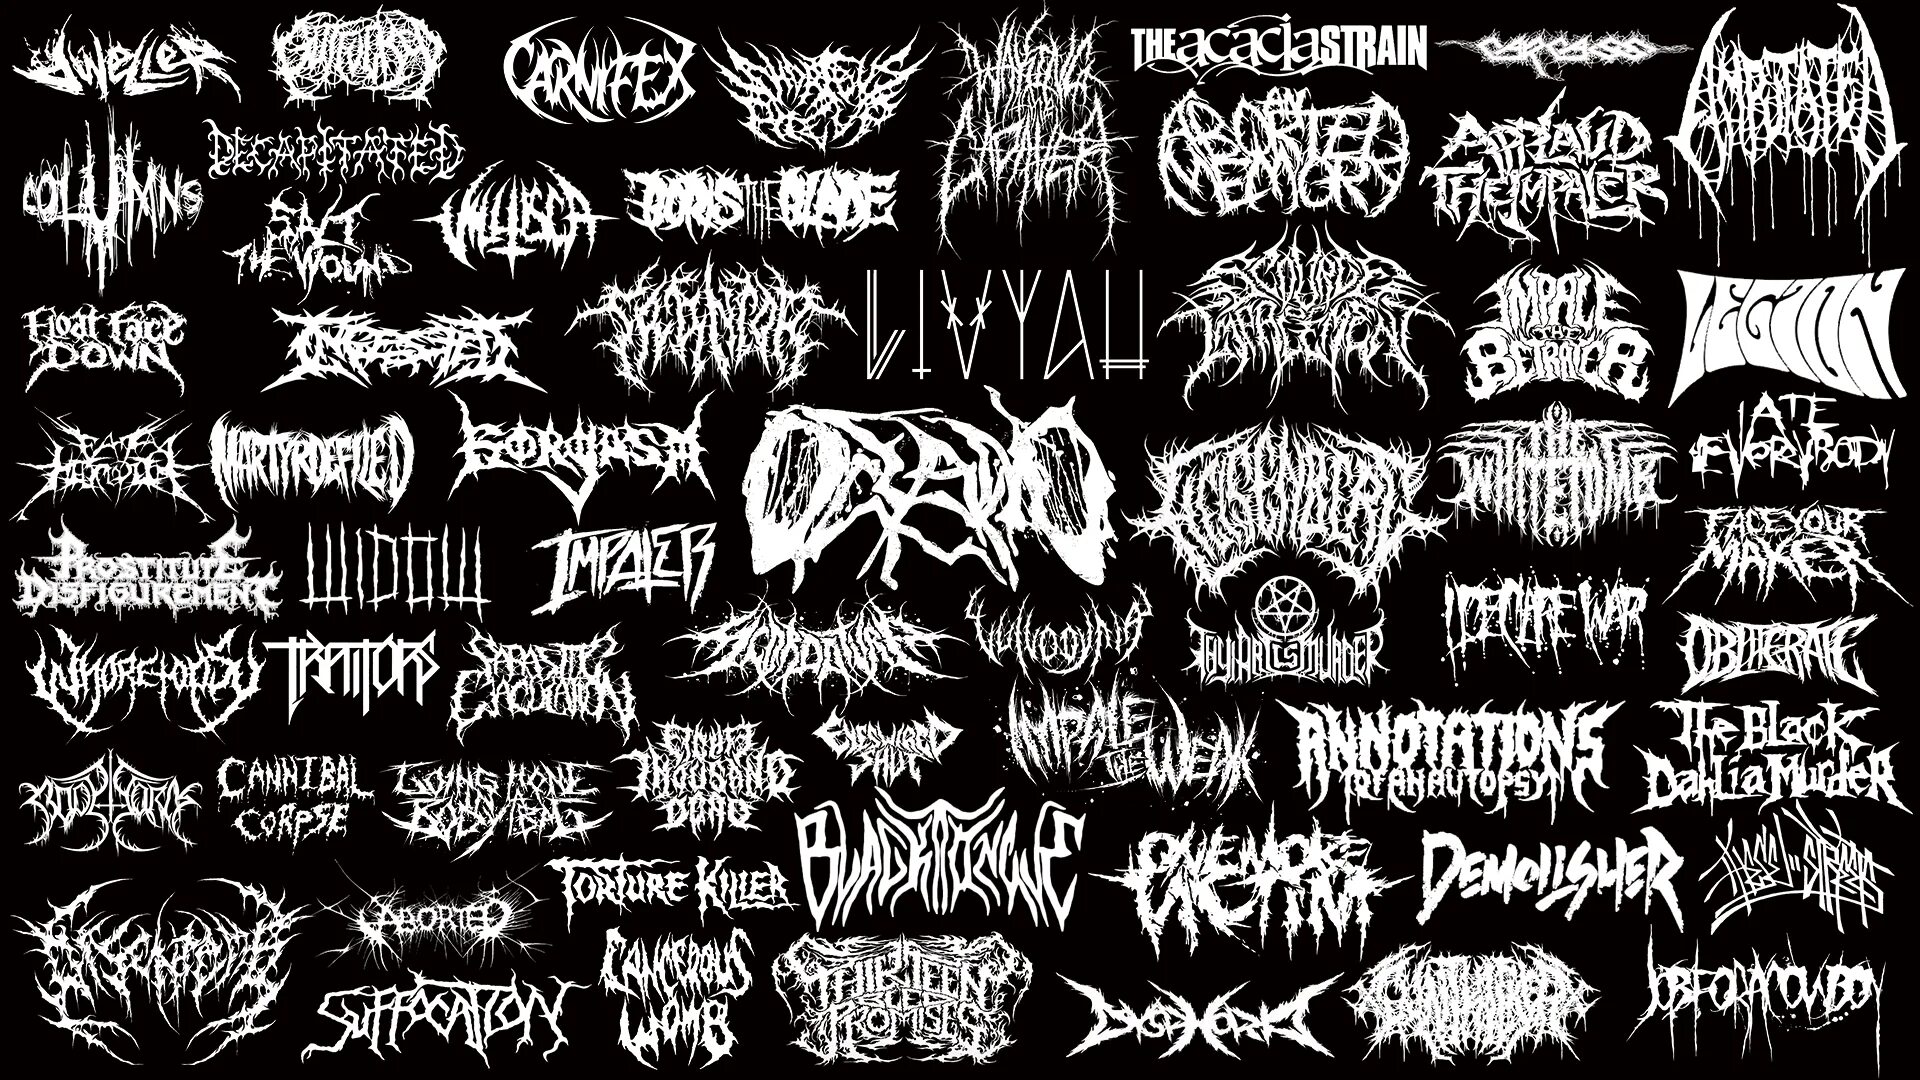 Название металкор группы. Надпись в стиле Black Metal. Блэк металл группы логотипы. Рок металл группа название.